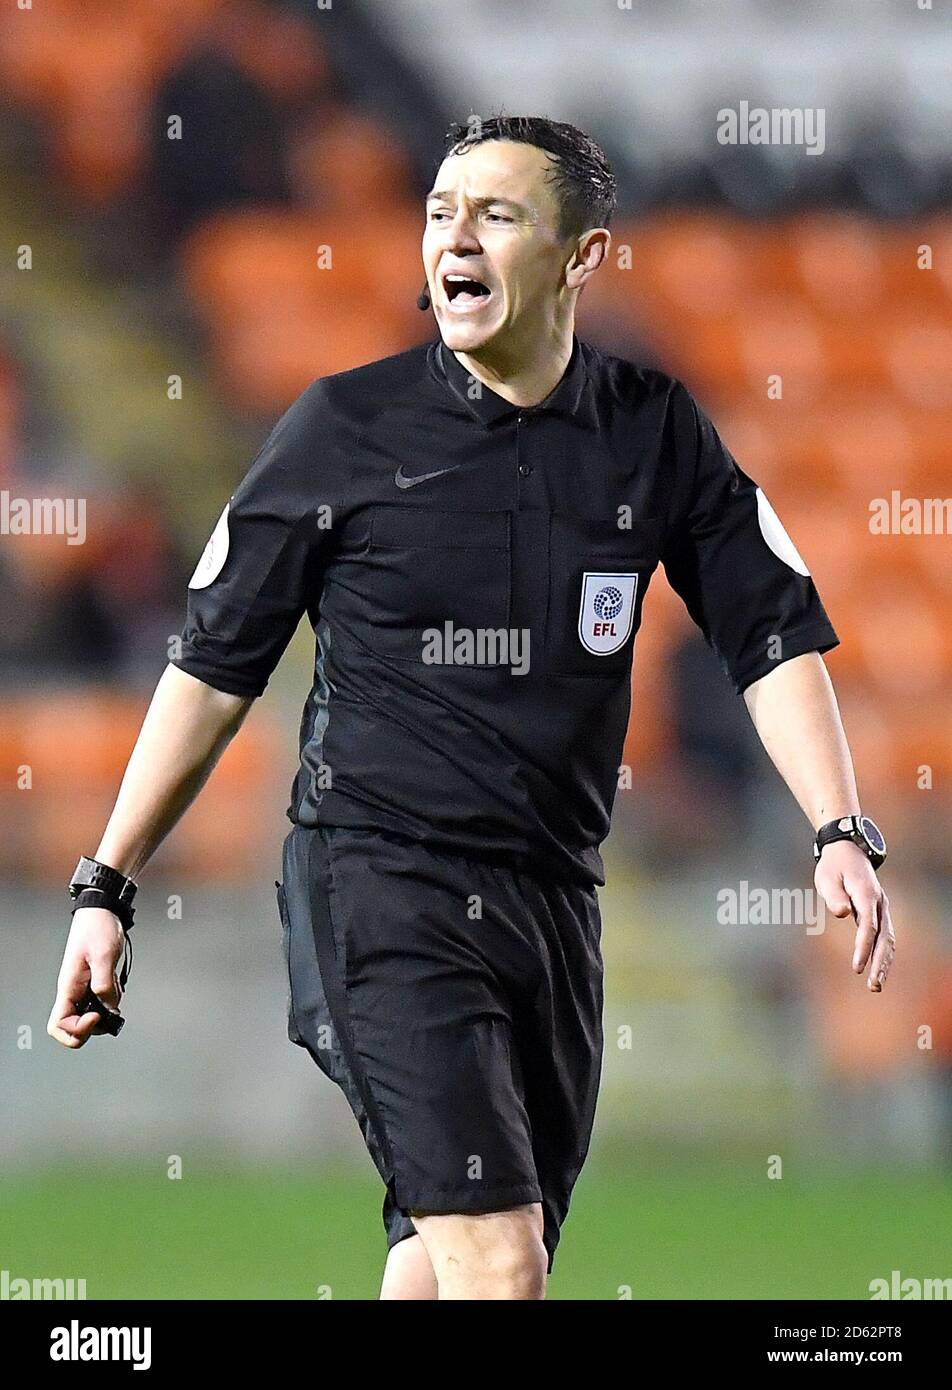 Referee Tony Harrington Stock Photo - Alamy